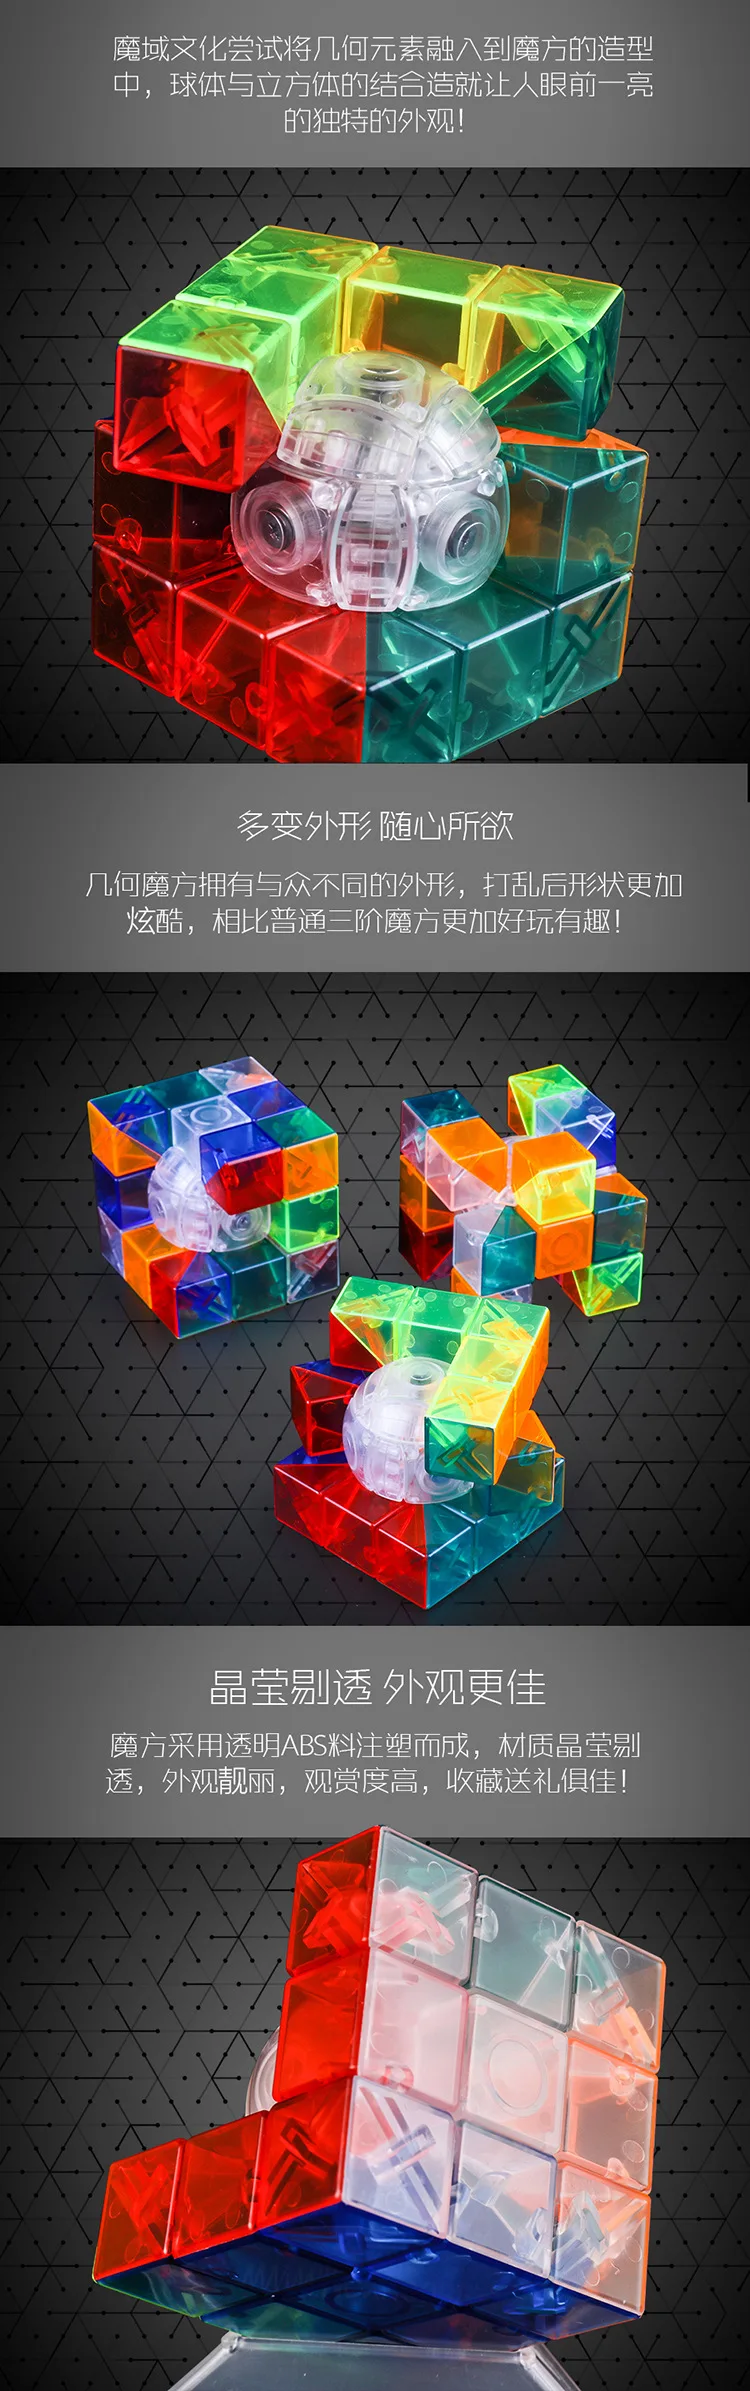 Кубик Рубика классная геометрическая форма Кубик Рубика демон геометрический Кубик Рубика гладкий прозрачный цветной обучающая игрушка Mf8831